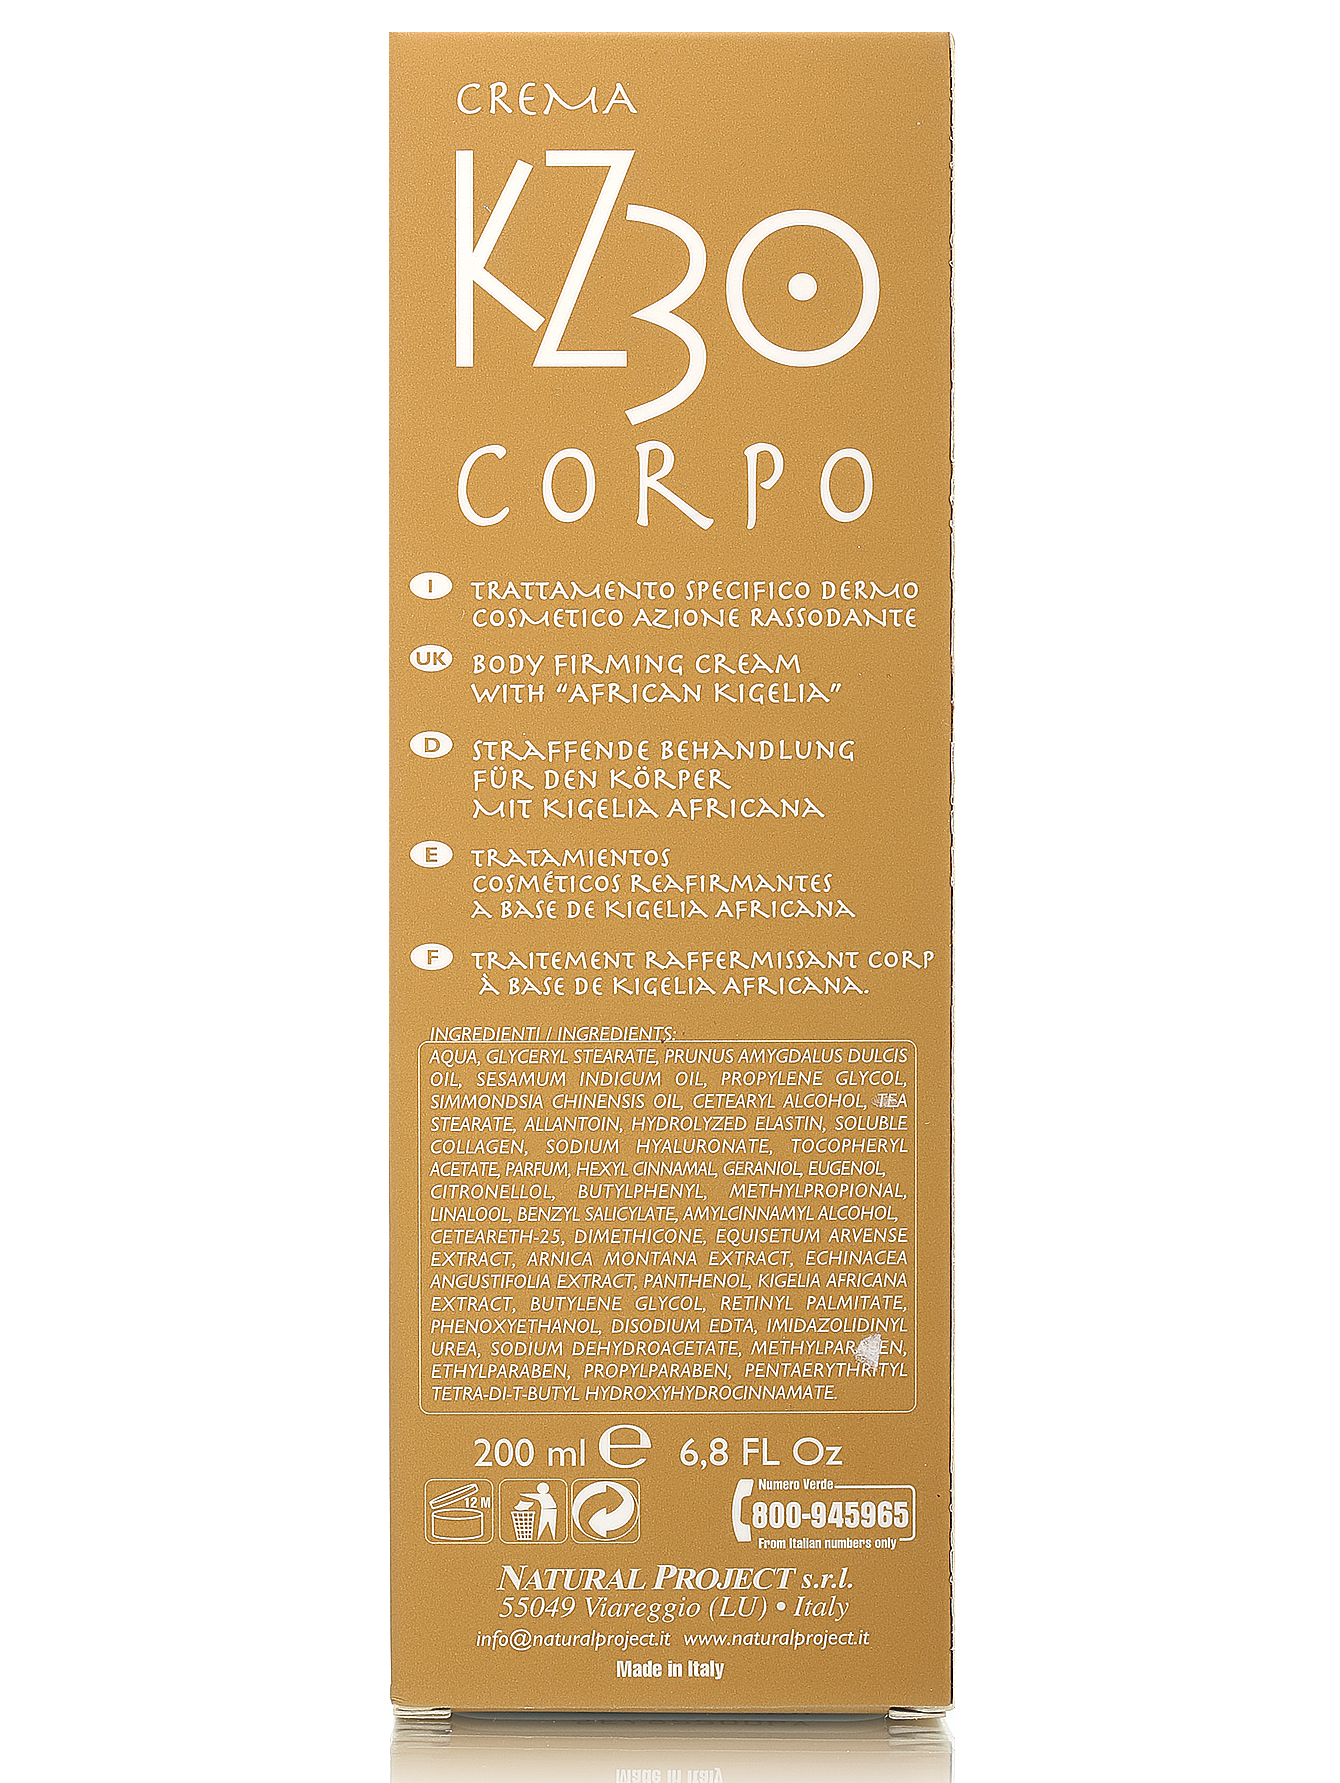  Крем для тела "Kz 30 Corpo" - Body Care, 200ml - Модель Верх-Низ